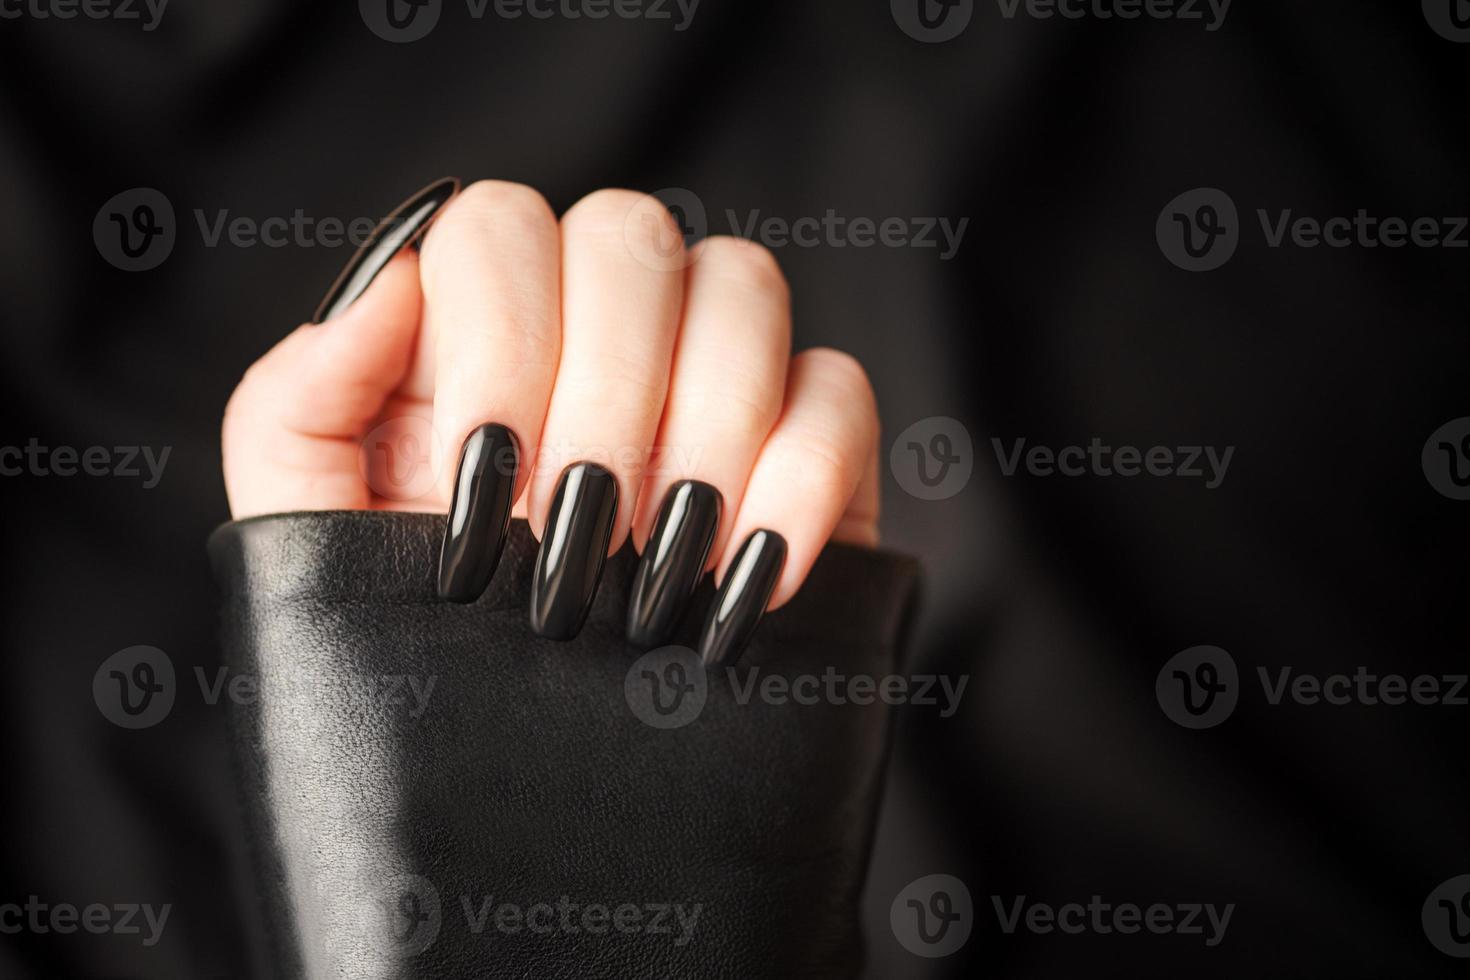 handen van een jong meisje met zwart manicure Aan nagels foto